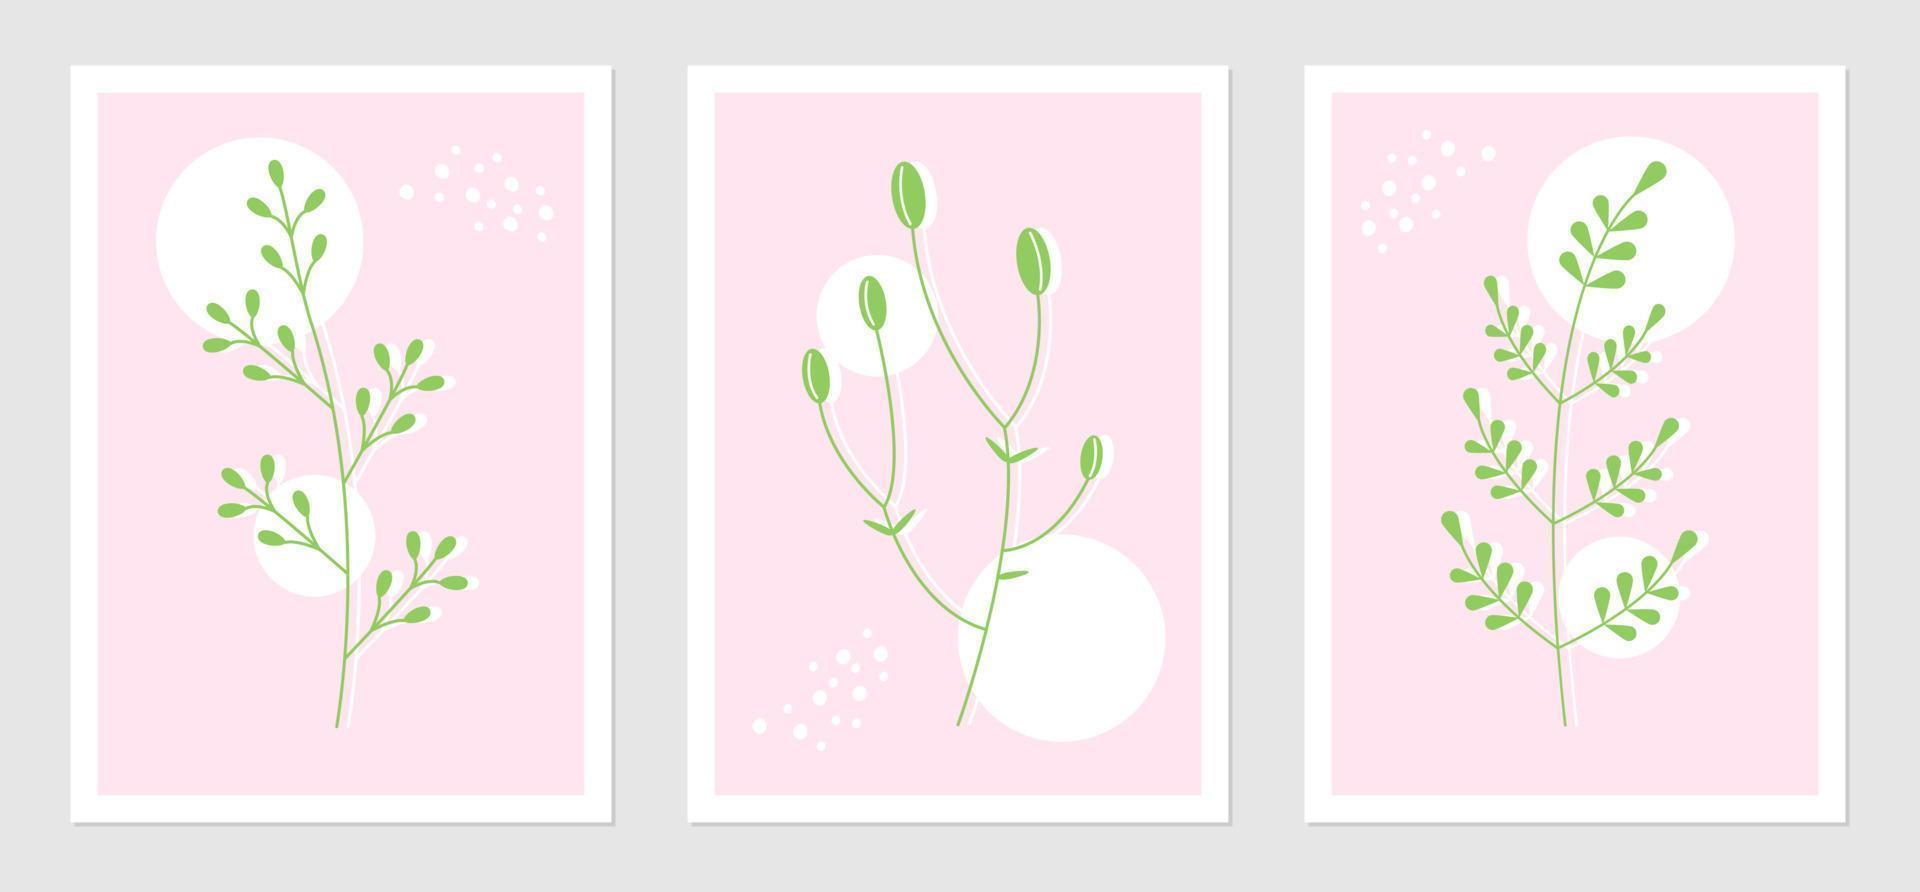 abstrakt Plakate einstellen mit Pflanze Elemente und geometrisch Formen. botanisch Vektor Illustration von Zweige. Konzept zum Innere Design im Rosa Grün Farben.